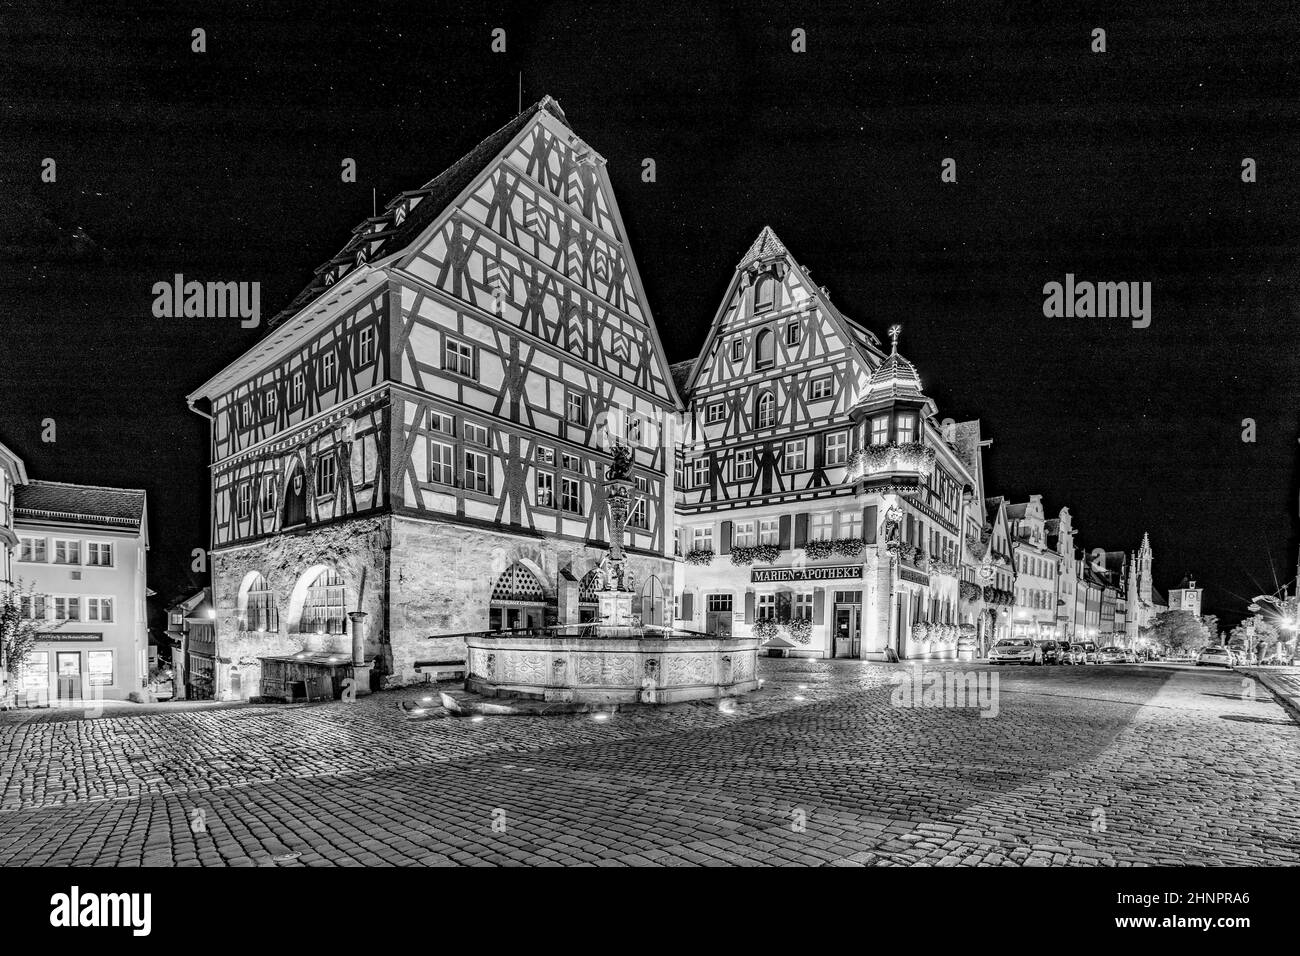 Nachtansicht der Altstadt von Rothenburg ob der Tauber, Deutschland. Stockfoto